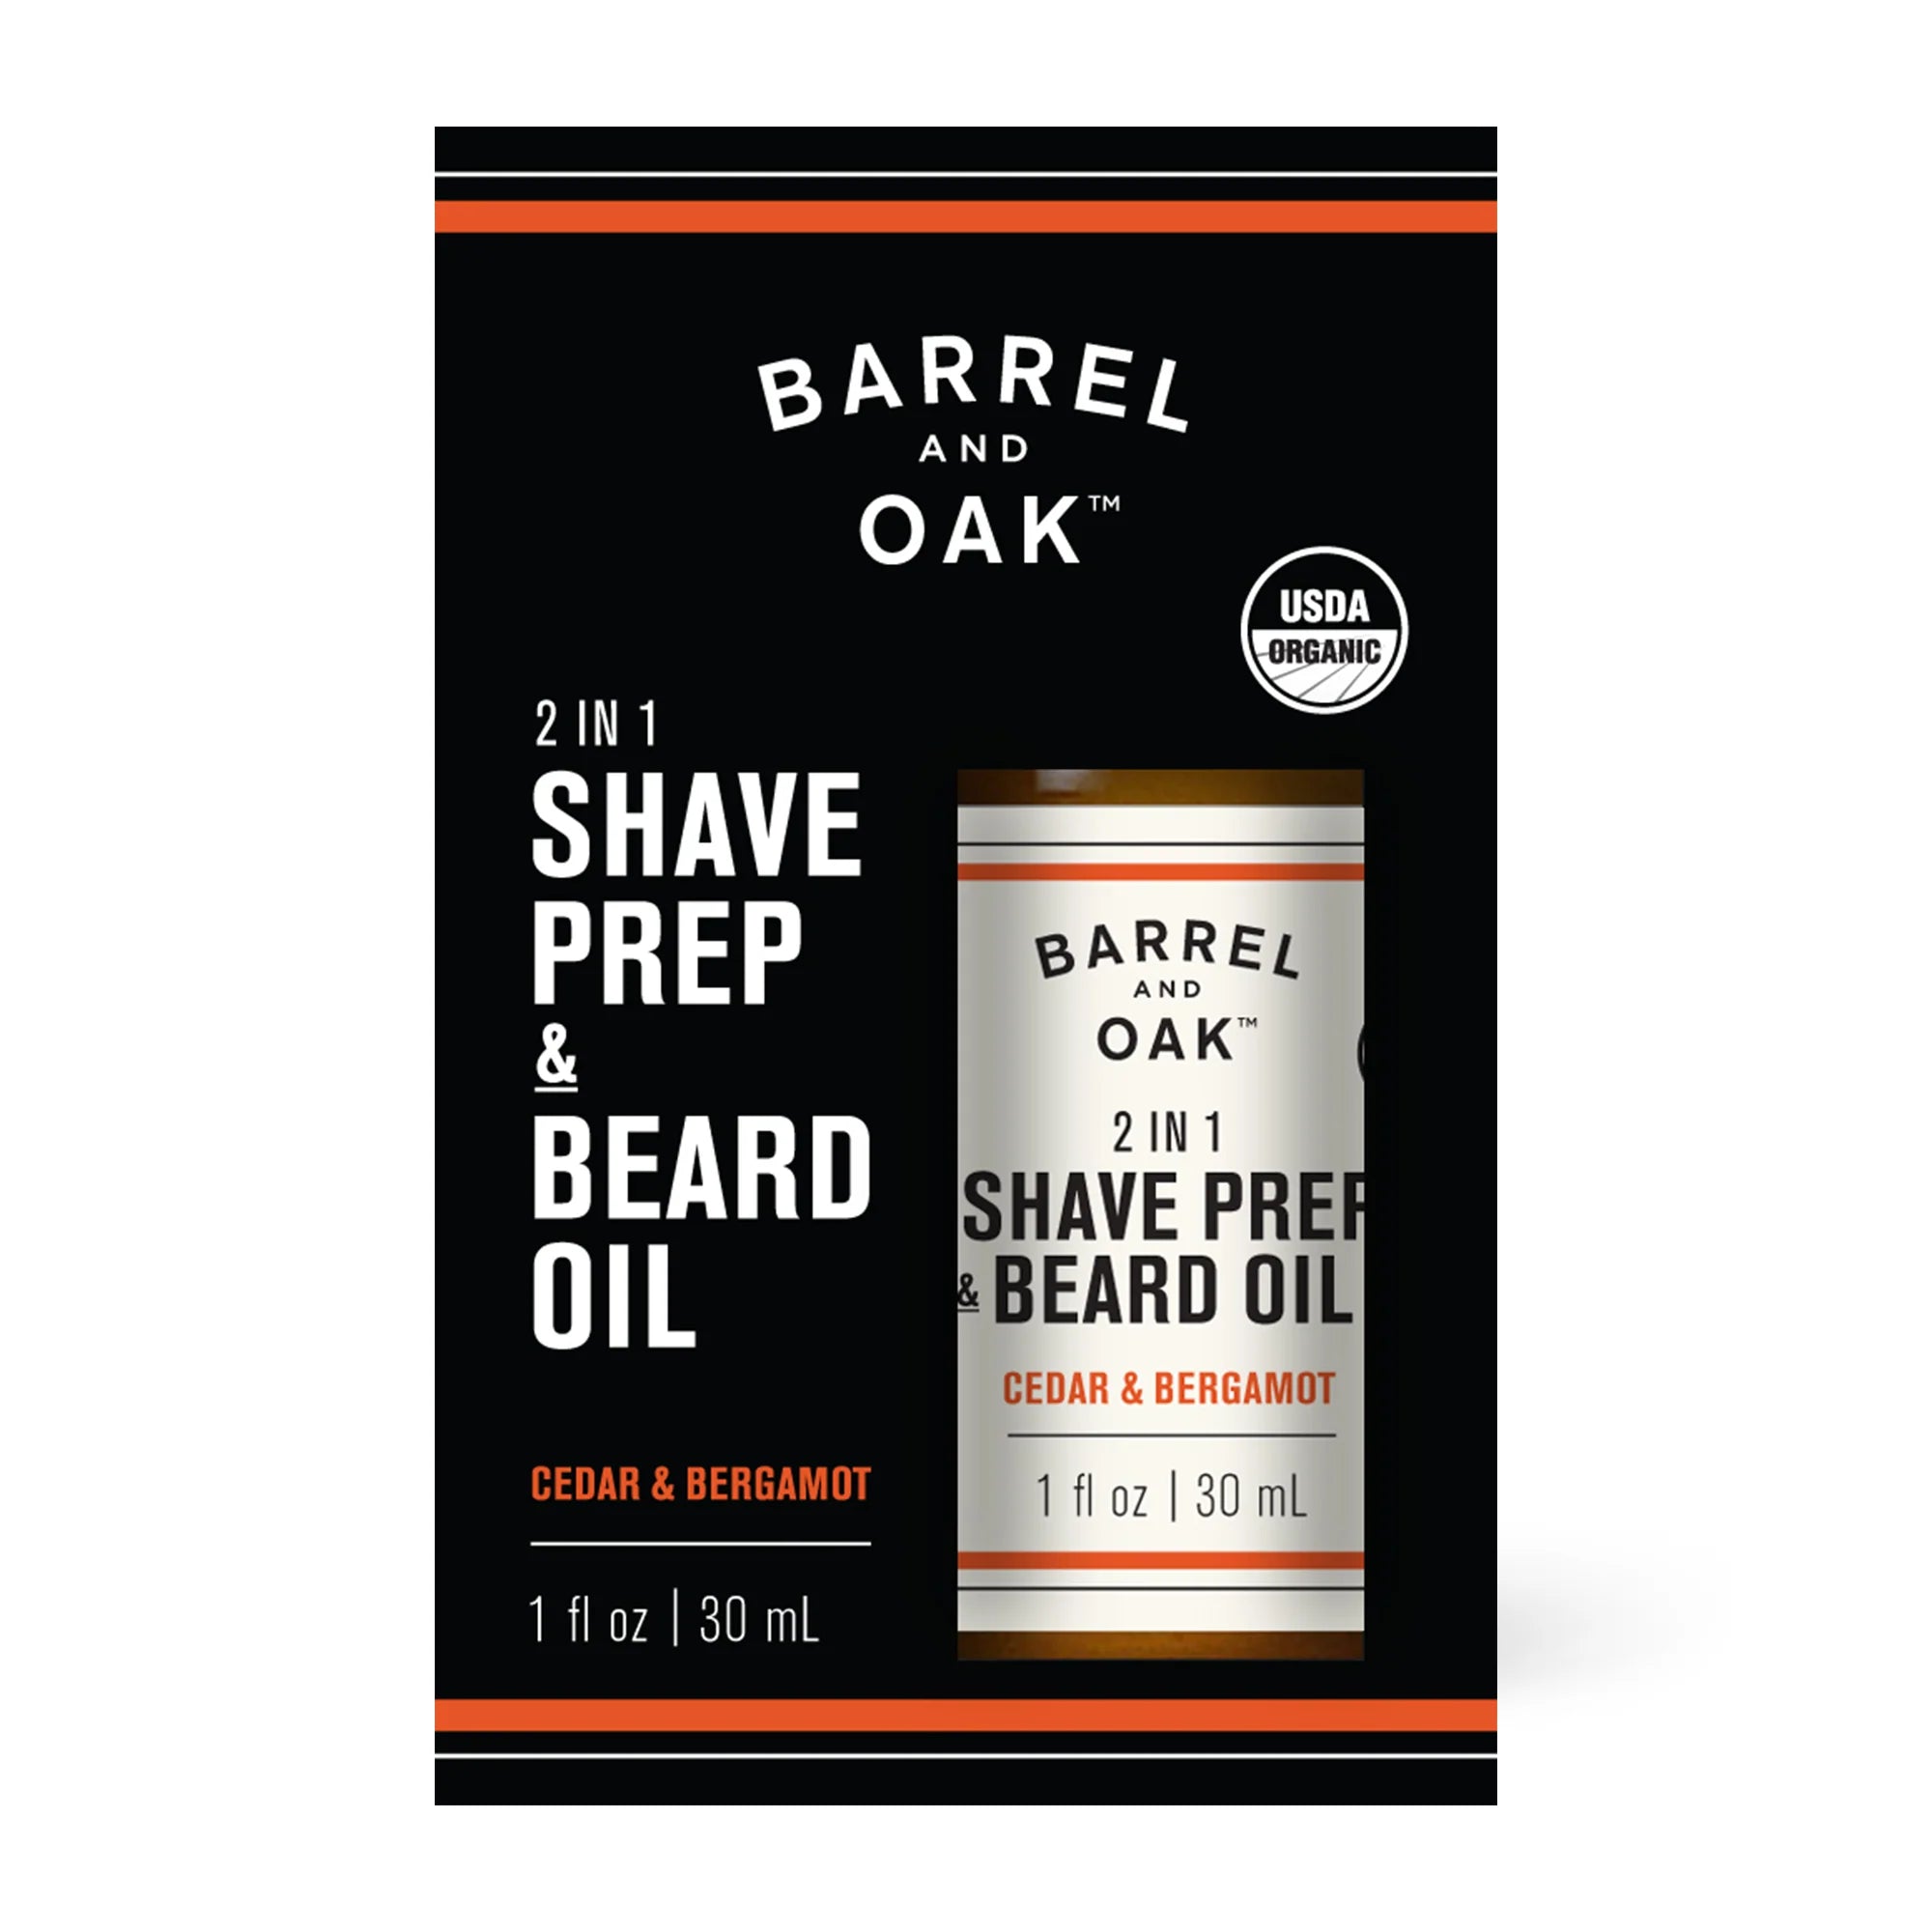 2 in 1 Shave Prep & Beard Oil - Cedar & Bergamont 1 fl oz.